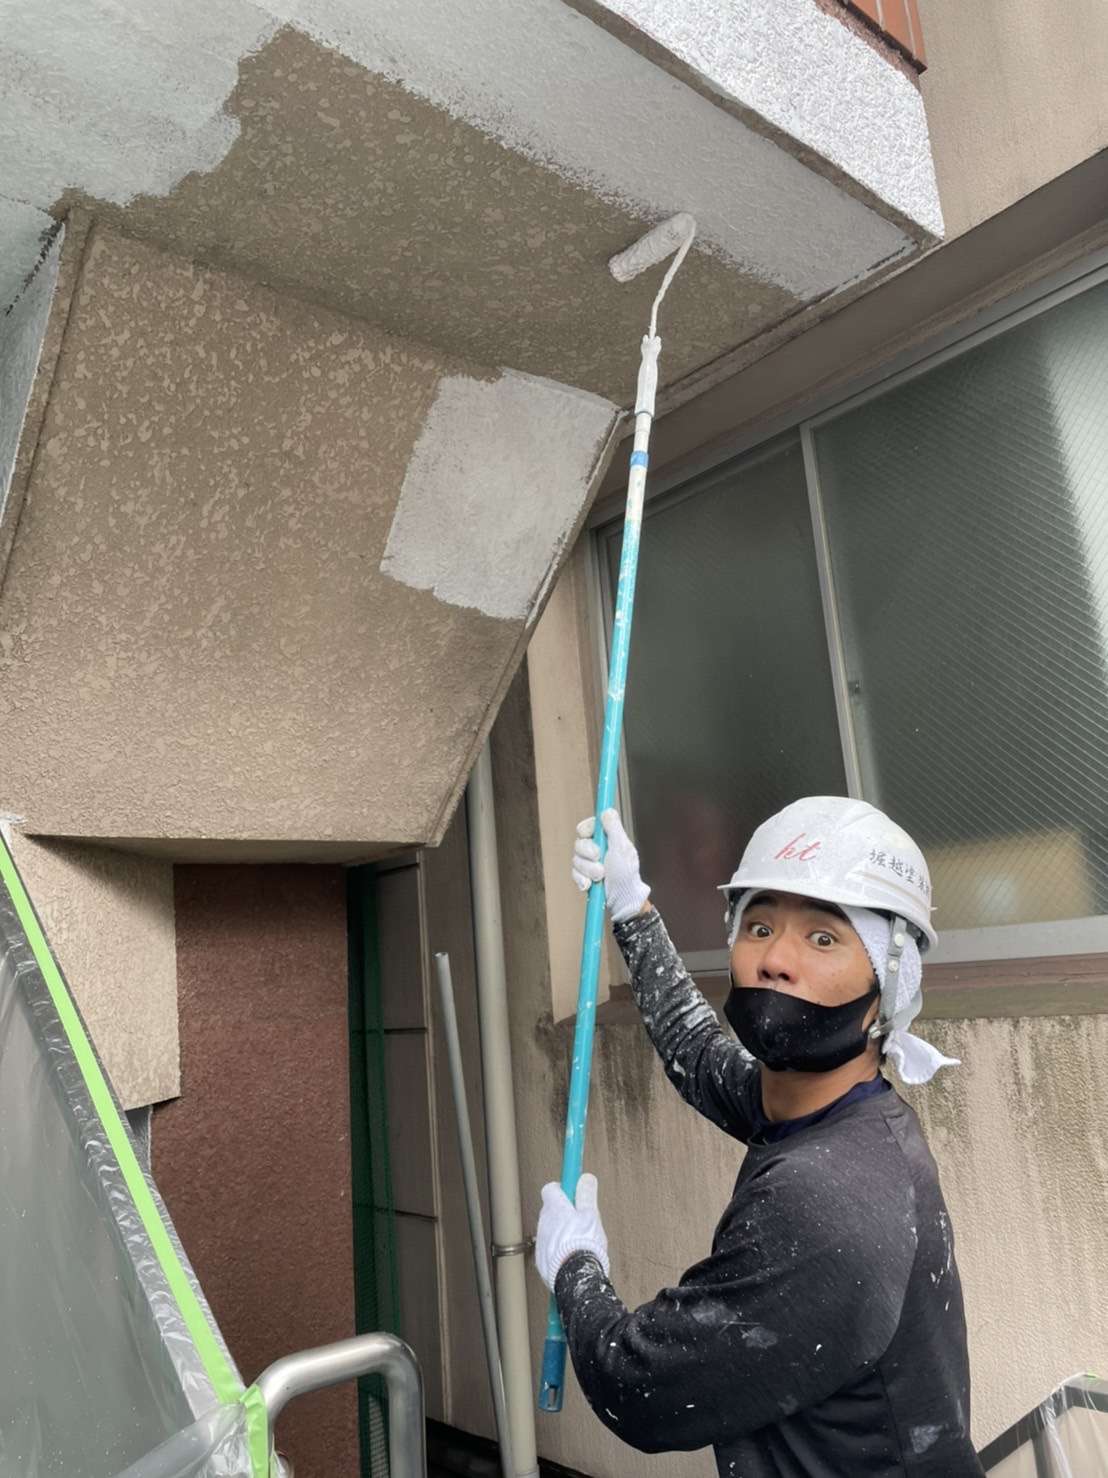 学歴や経験を問わず埼玉を中心に塗装工事に就く人材を募集する求人です